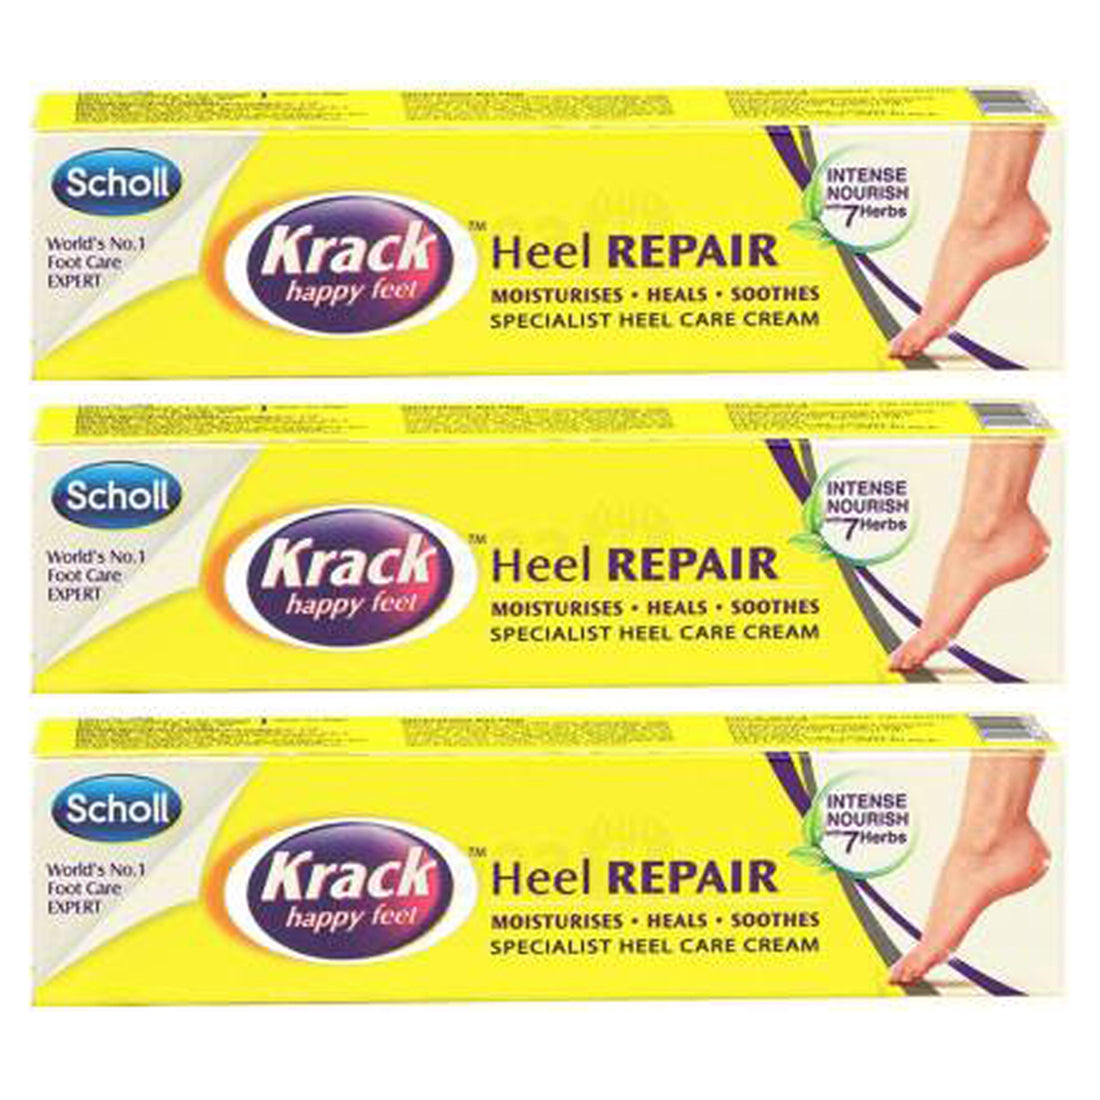 Scholl Krack Happy Feet Heel Repair Cream 25gm Pack Of 3